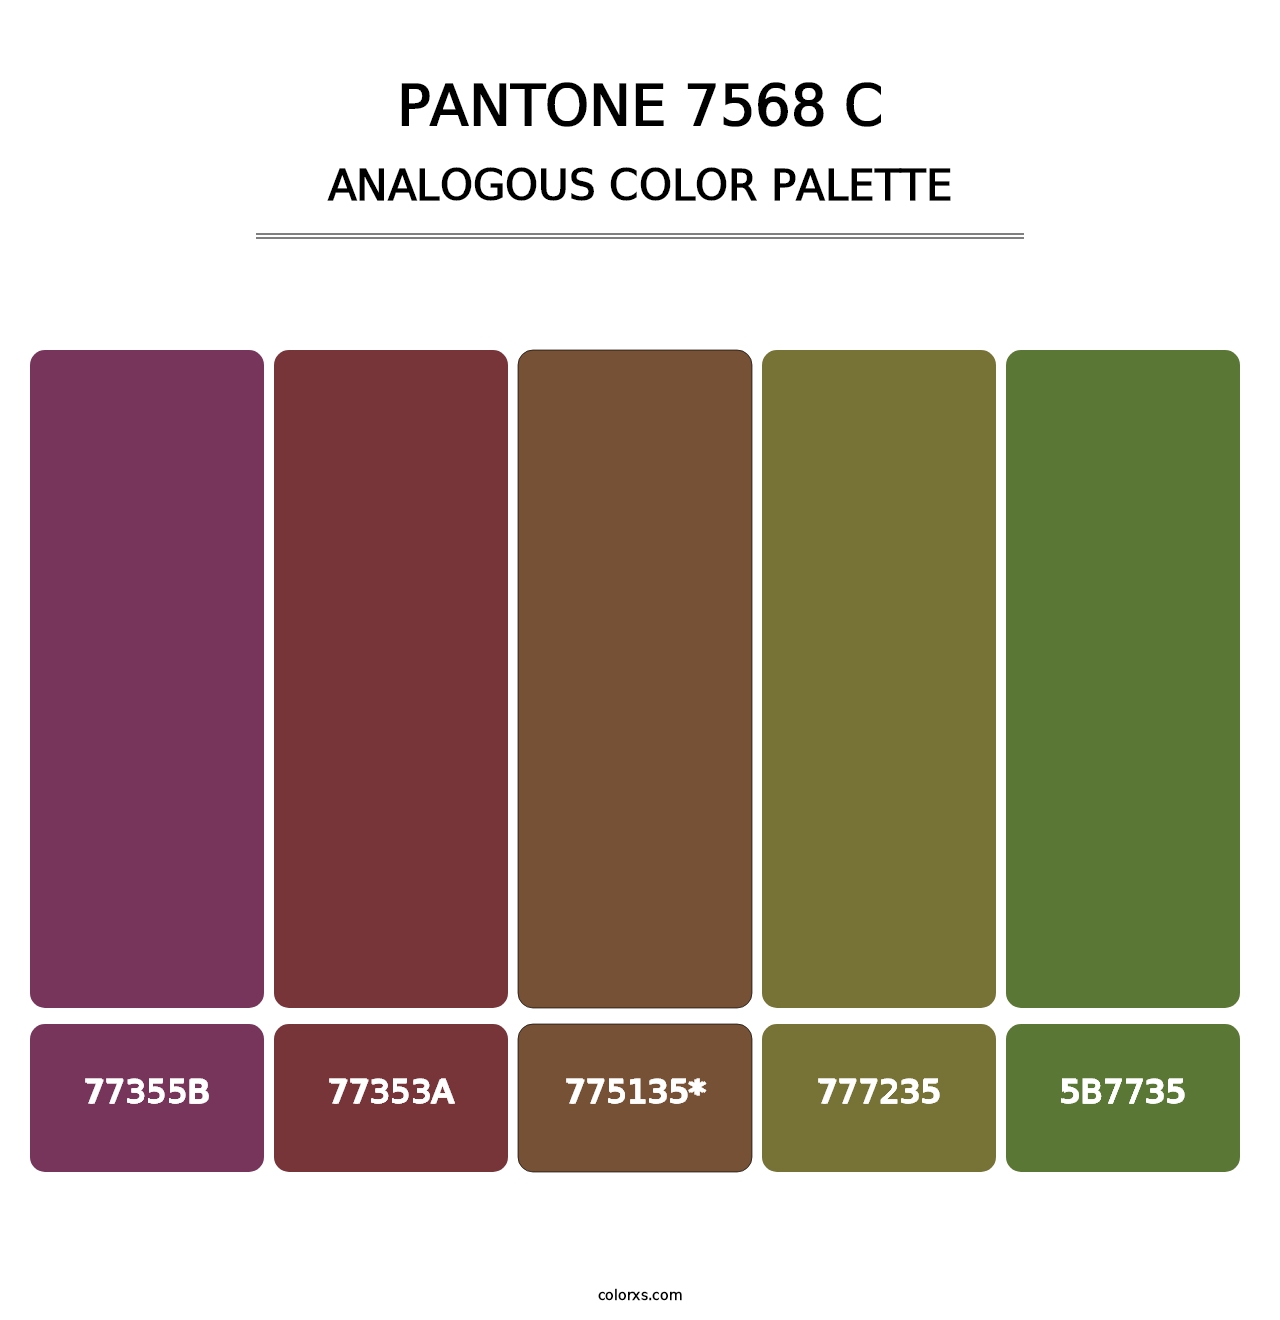 PANTONE 7568 C - Analogous Color Palette